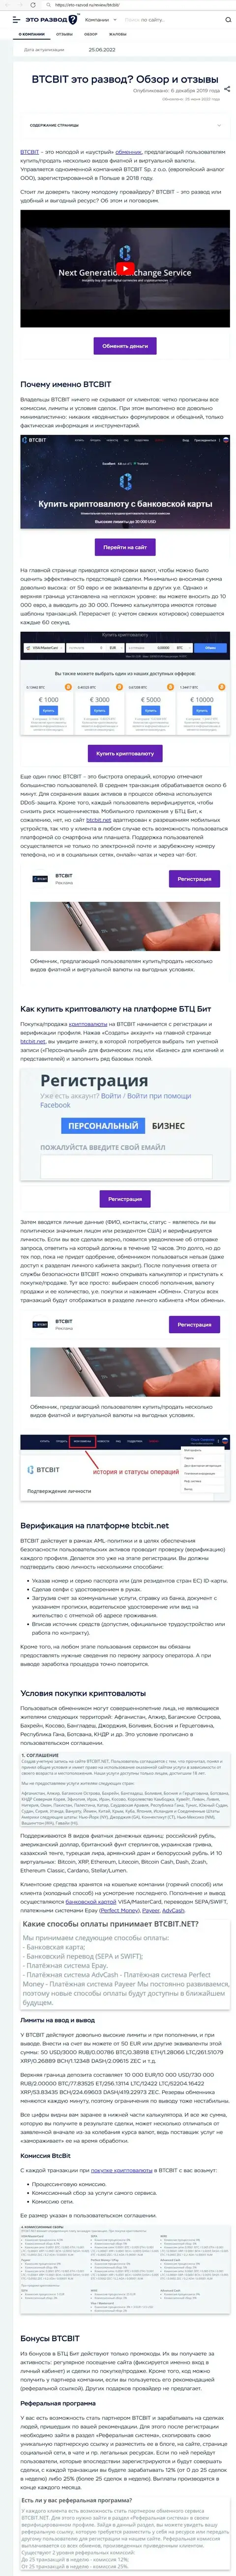 Анализ деятельности и условия для сотрудничества организации BTCBit в обзорной статье на сайте Eto Razvod Ru